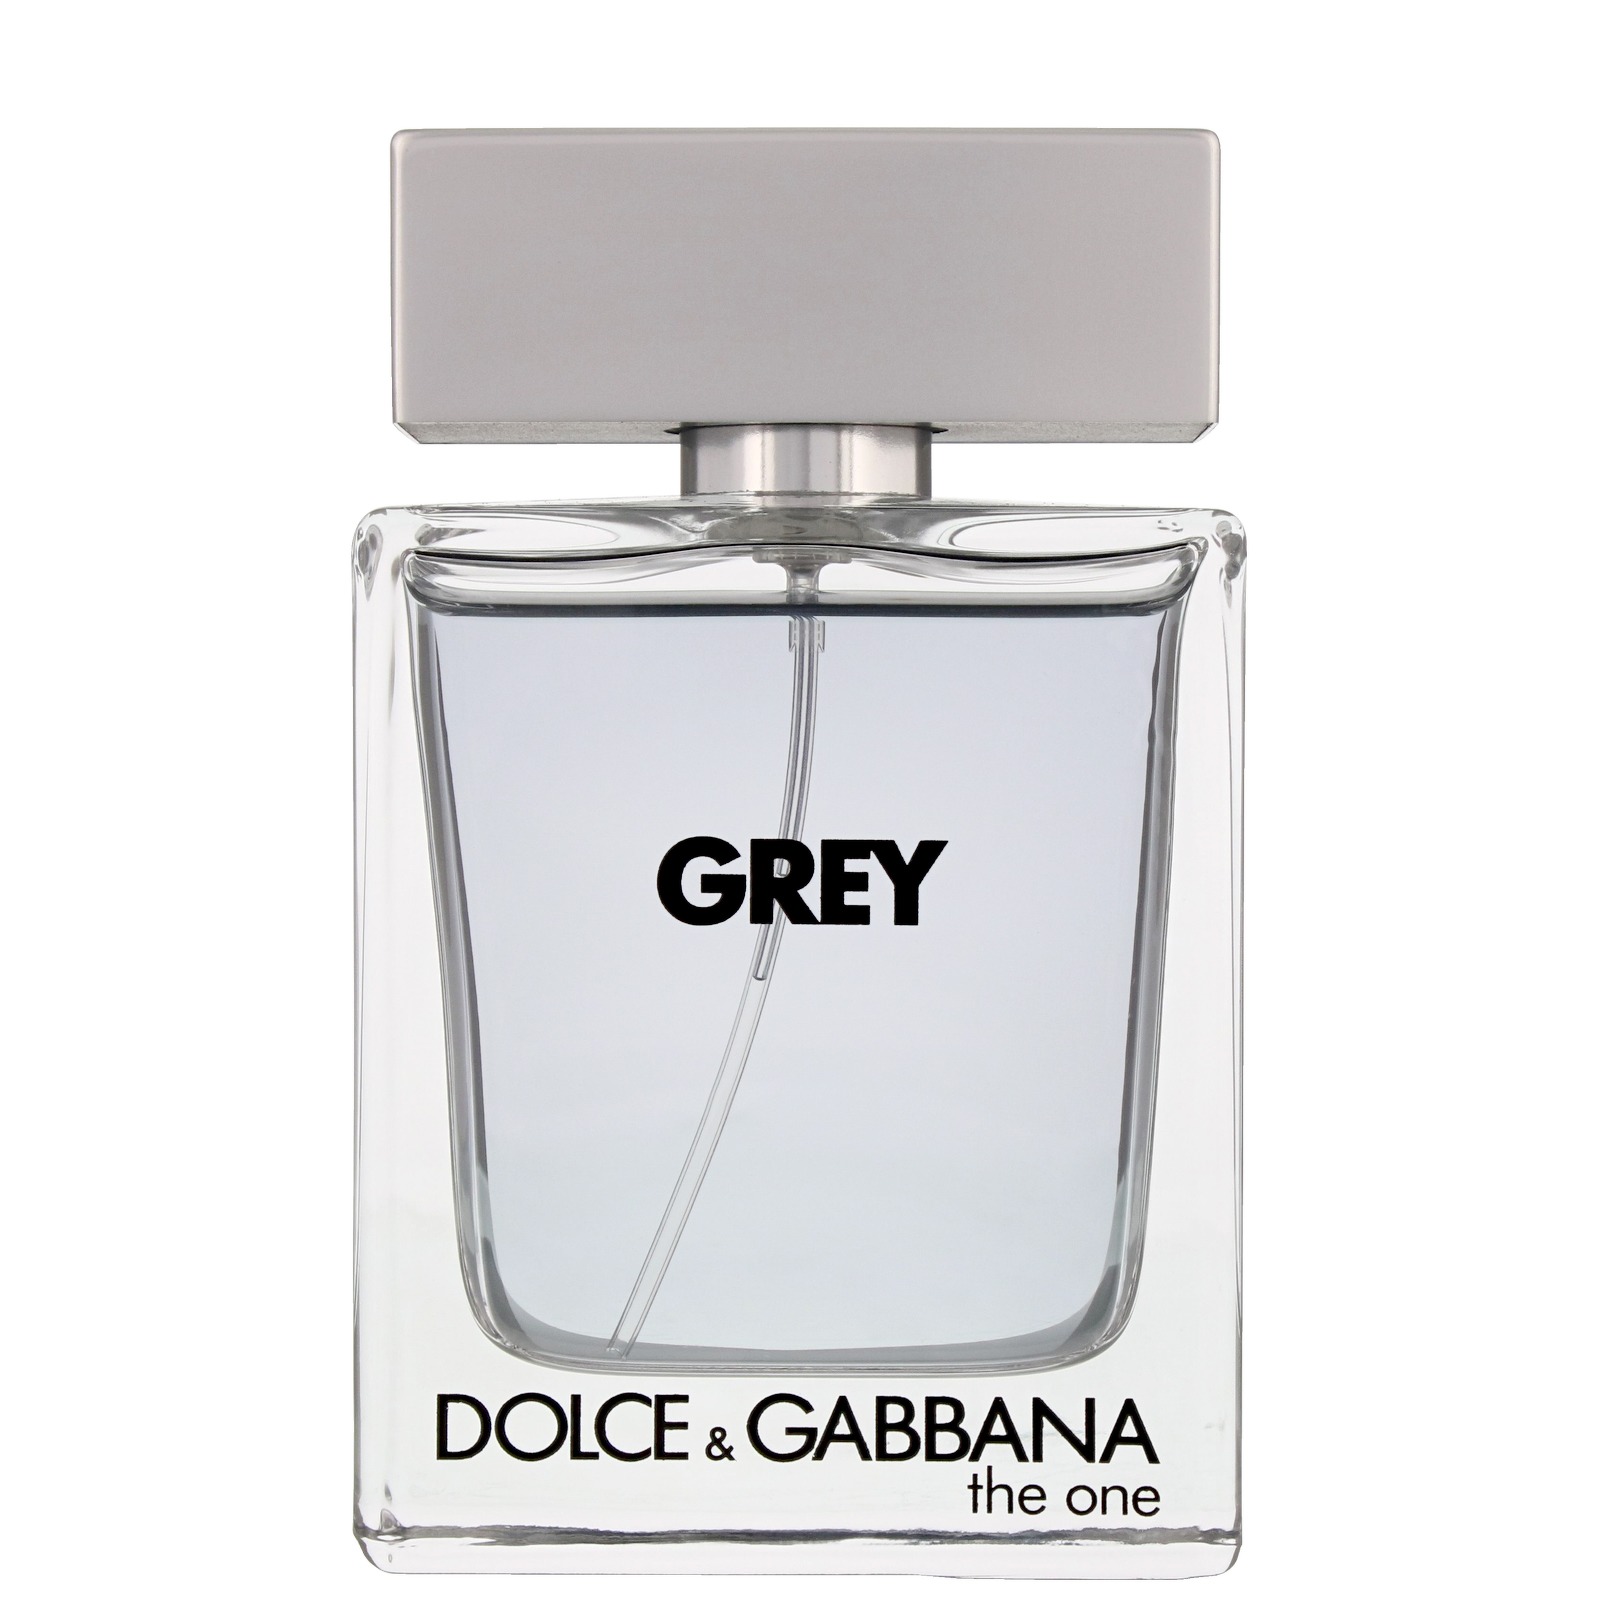 dolce and gabbana perfume grey